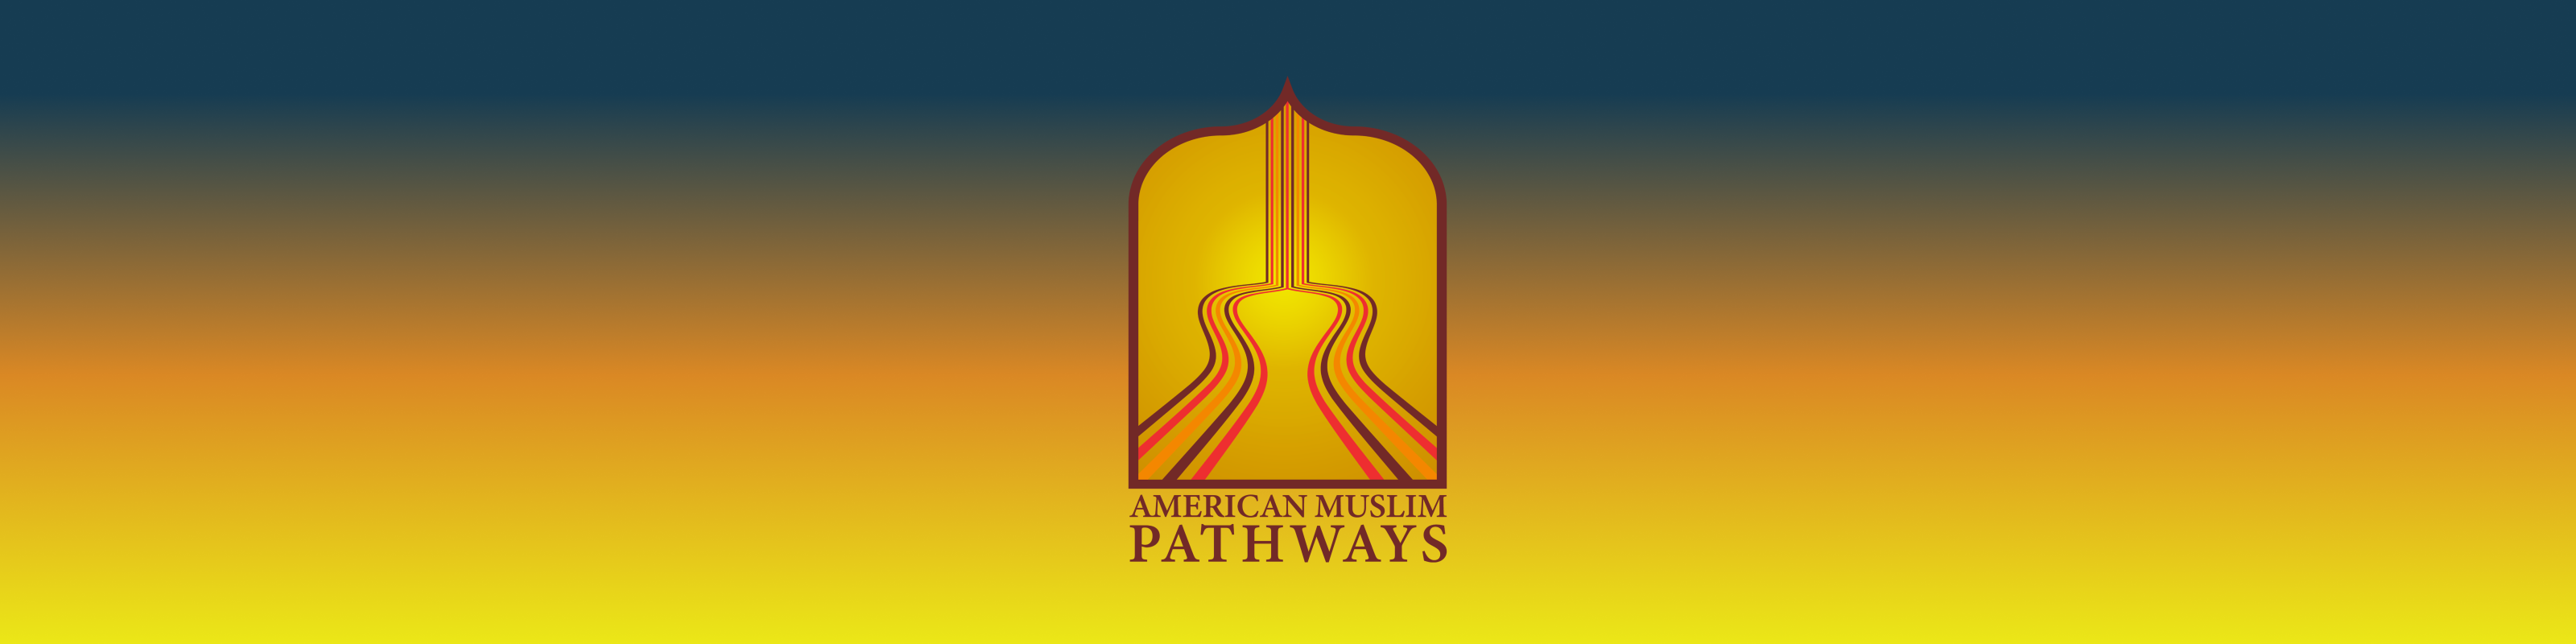 muslim pathways header